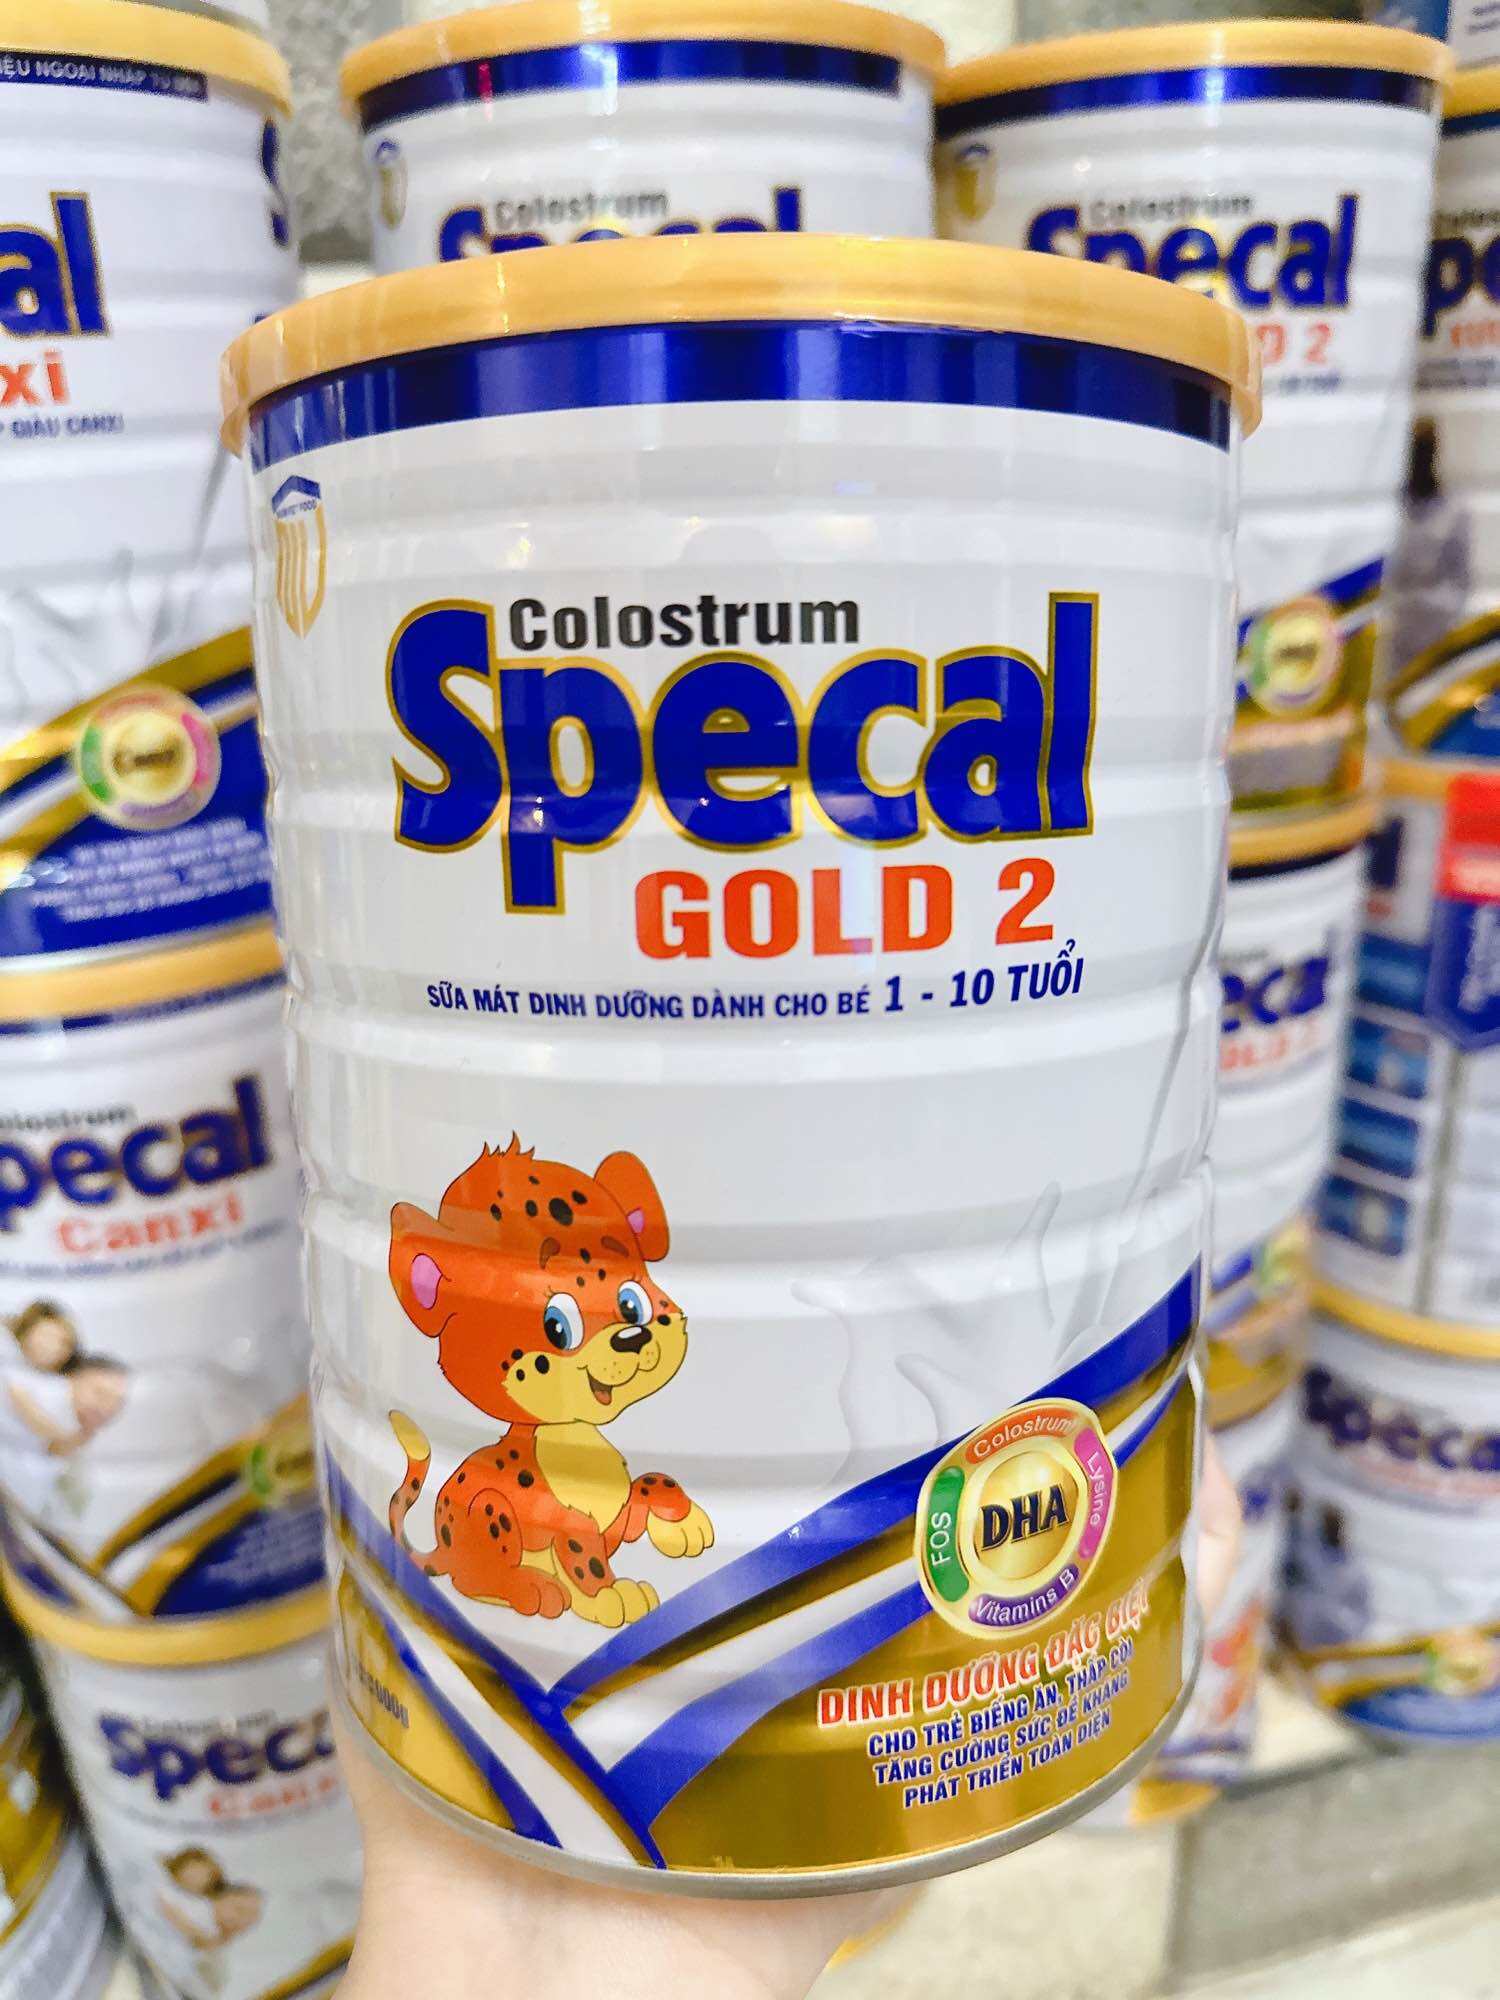 sữa mát dinh dưỡng gold2 dành cho bé từ 1-10 tuổi COLOSTRUM SPECAL